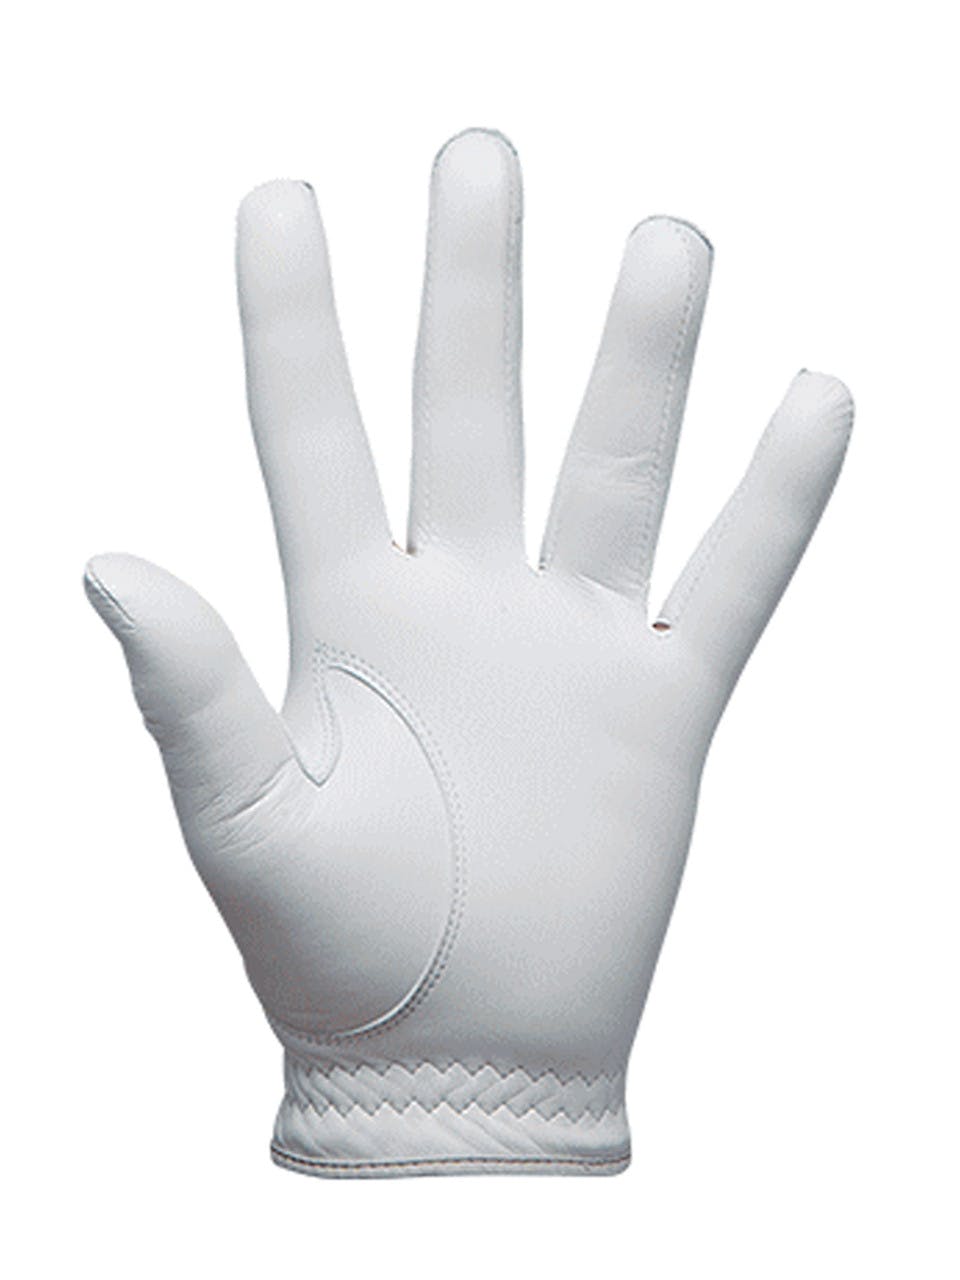 Bridgestone Men's Tour Premium Worn on Left Hand Golf Glove